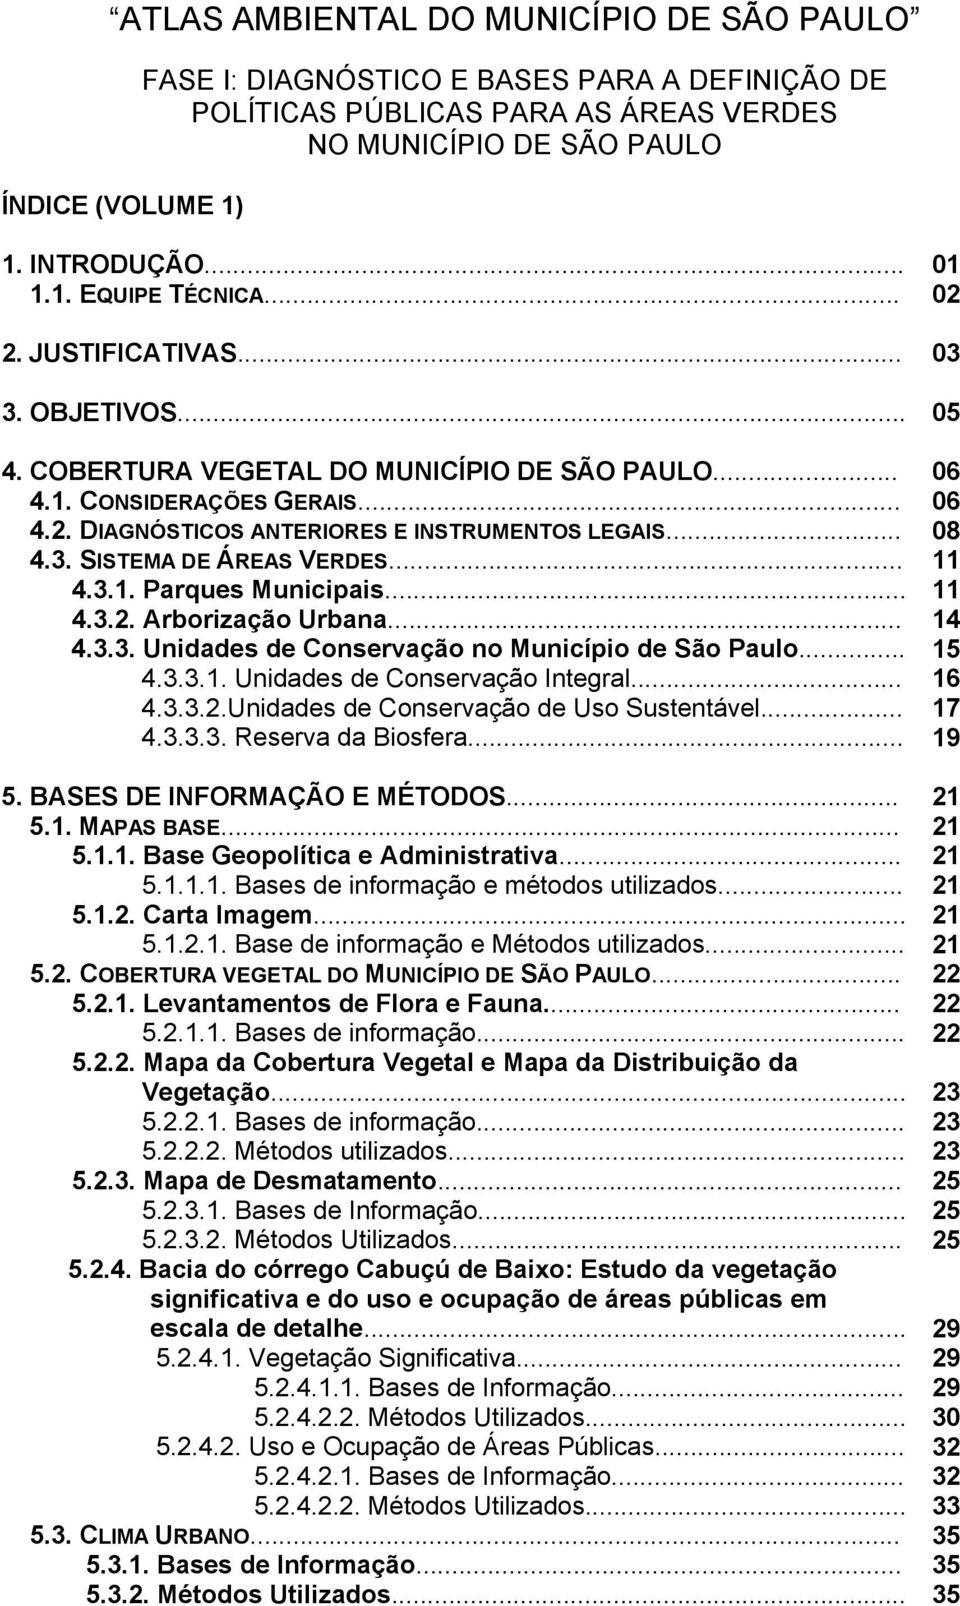 .. 11 4.3.1. Parques Municipais... 11 4.3.2. Arborização Urbana... 14 4.3.3. Unidades de Conservação no Município de São Paulo... 15 4.3.3.1. Unidades de Conservação Integral... 16 4.3.3.2.Unidades de Conservação de Uso Sustentável.